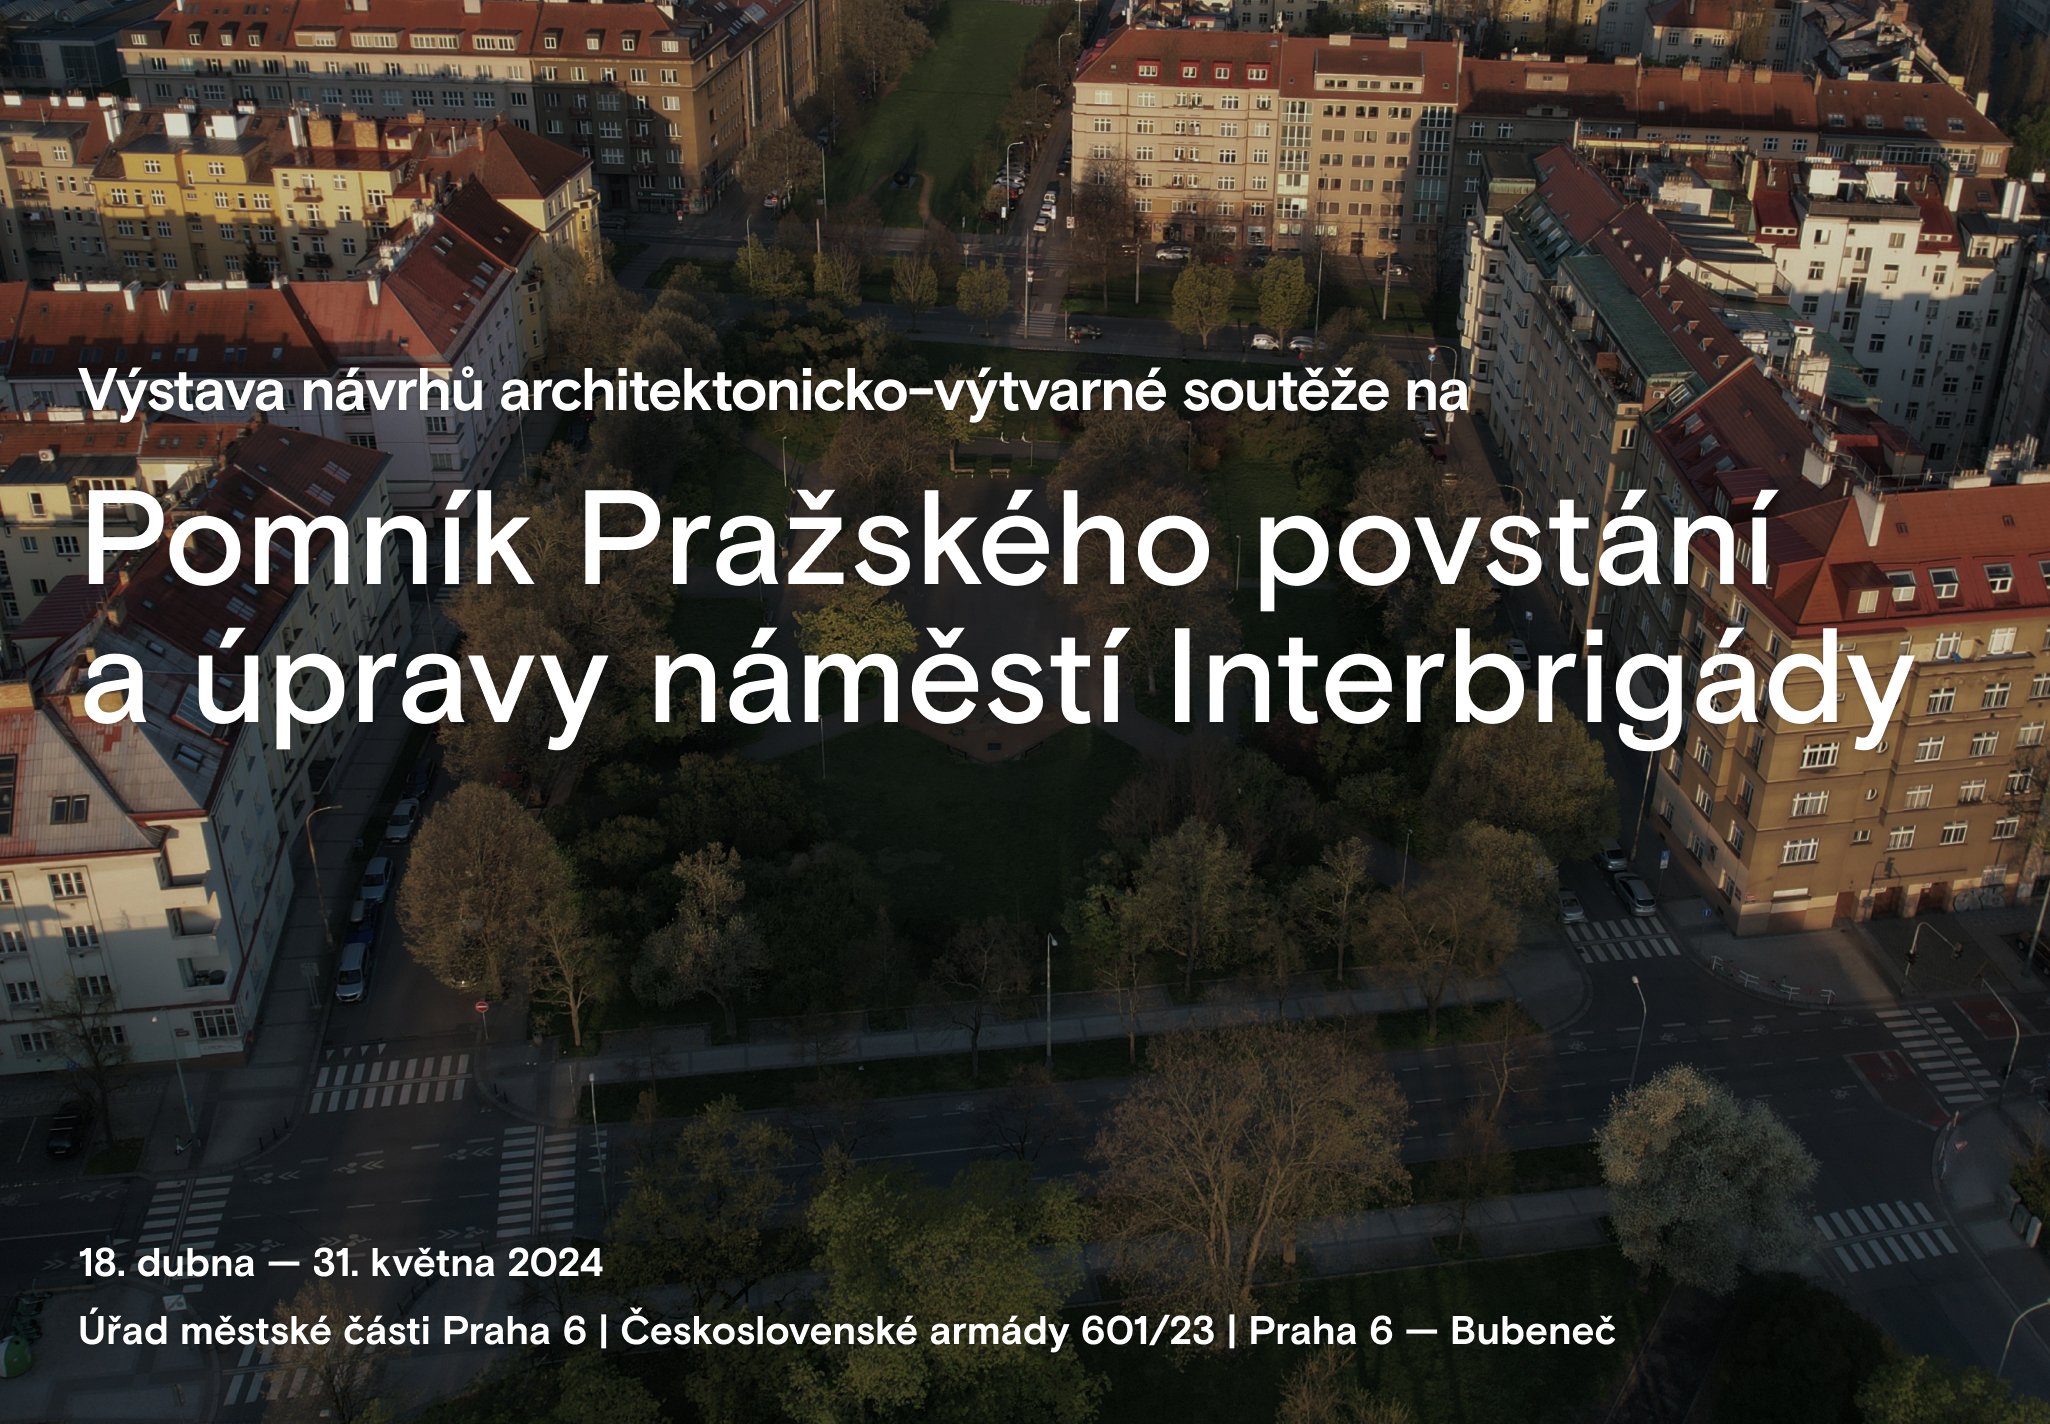 Výstava soutěžních návrhů na pomník Pražského povstání